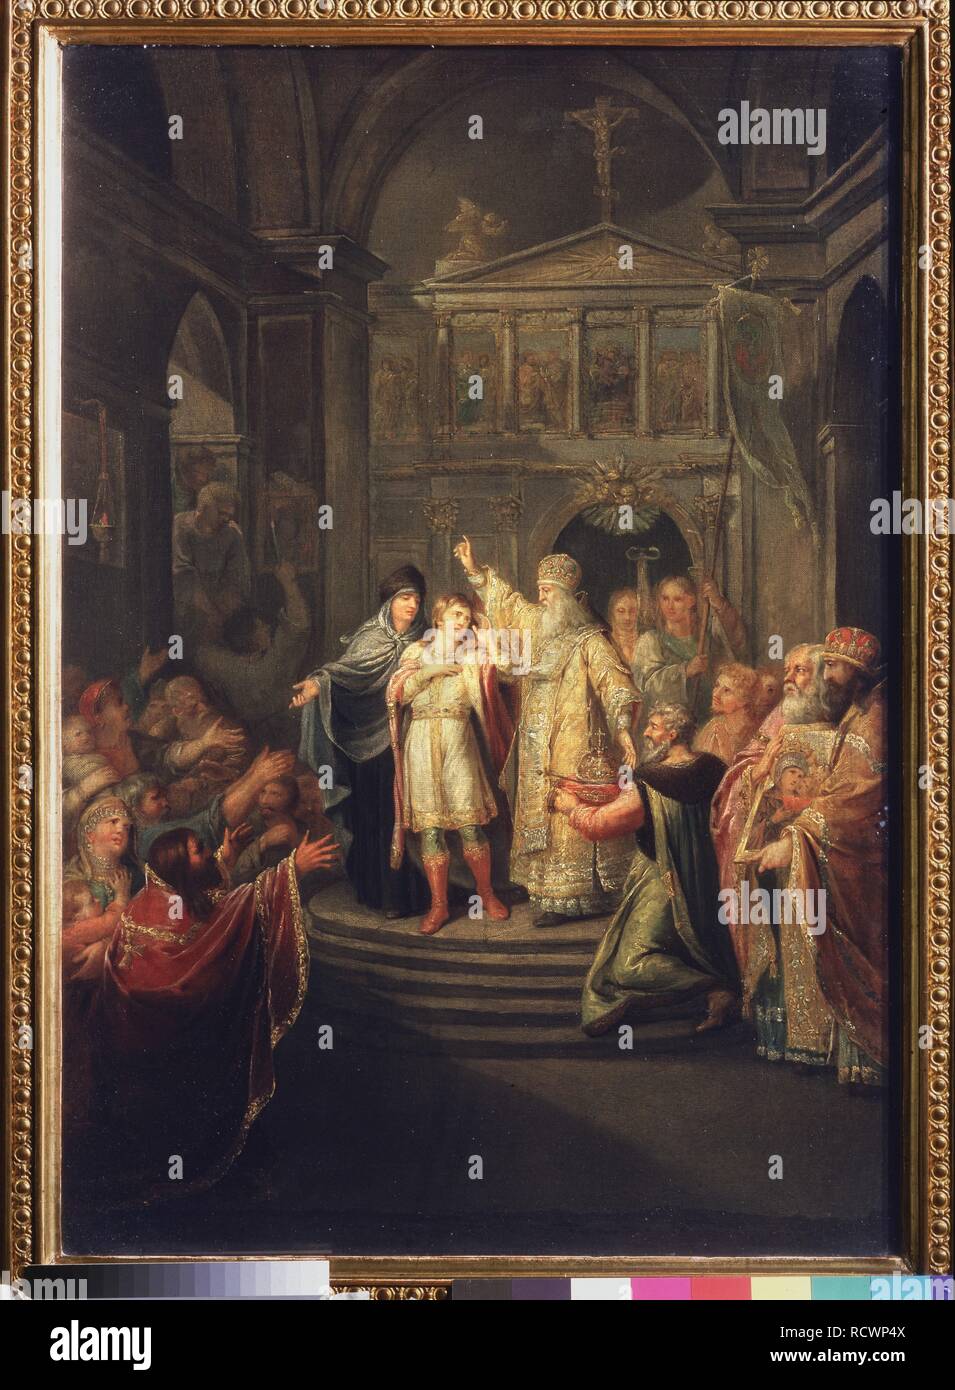 L'elezione di Michail Romanov per lo zar il 14 marzo 1613. Museo: Membro Galleria Tretyakov di Mosca. Autore: Ugryumov, Grigori Ivanovich. Foto Stock